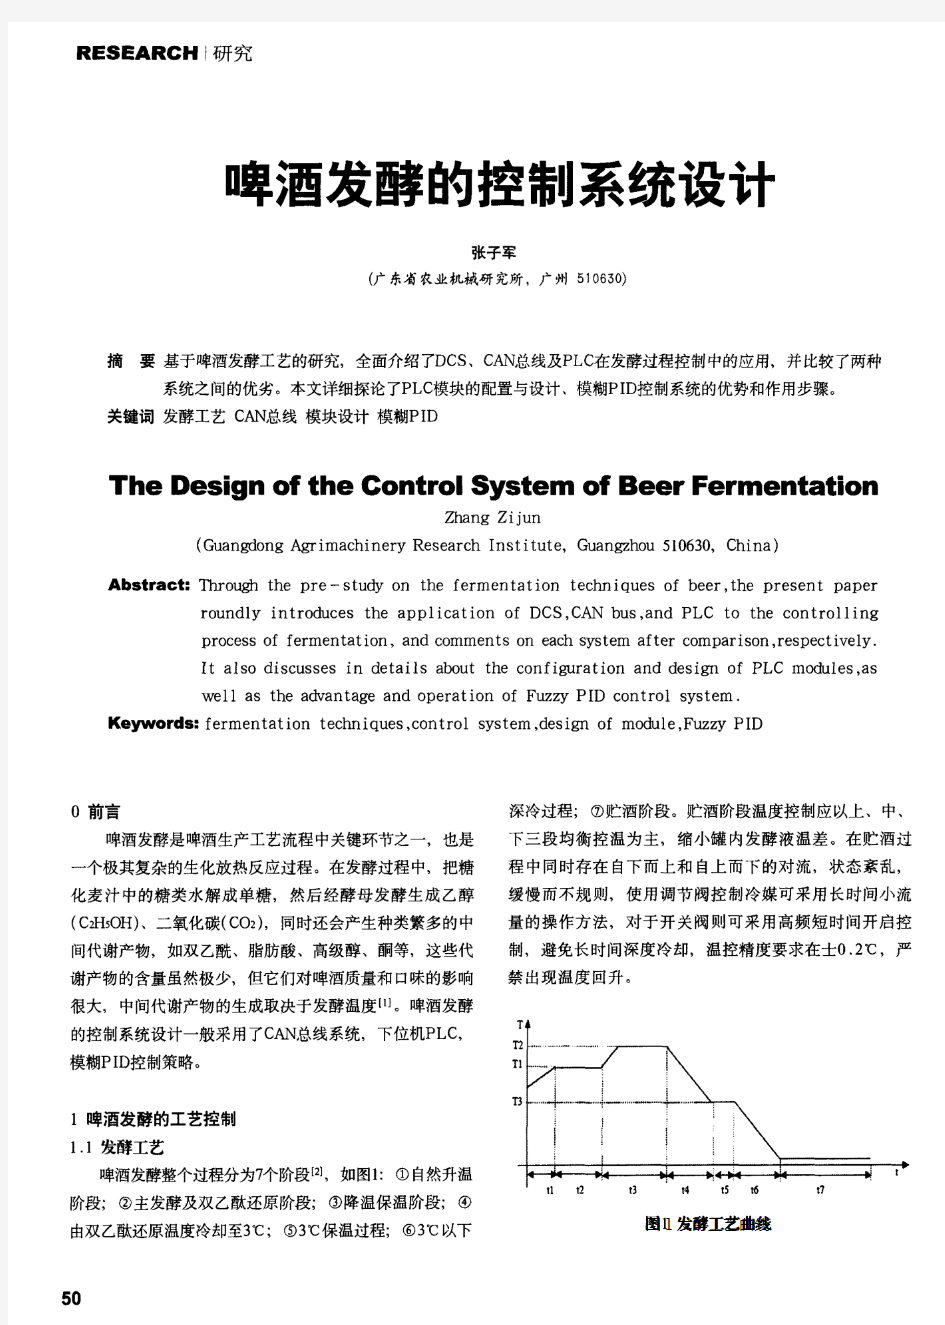 啤酒发酵的控制系统设计